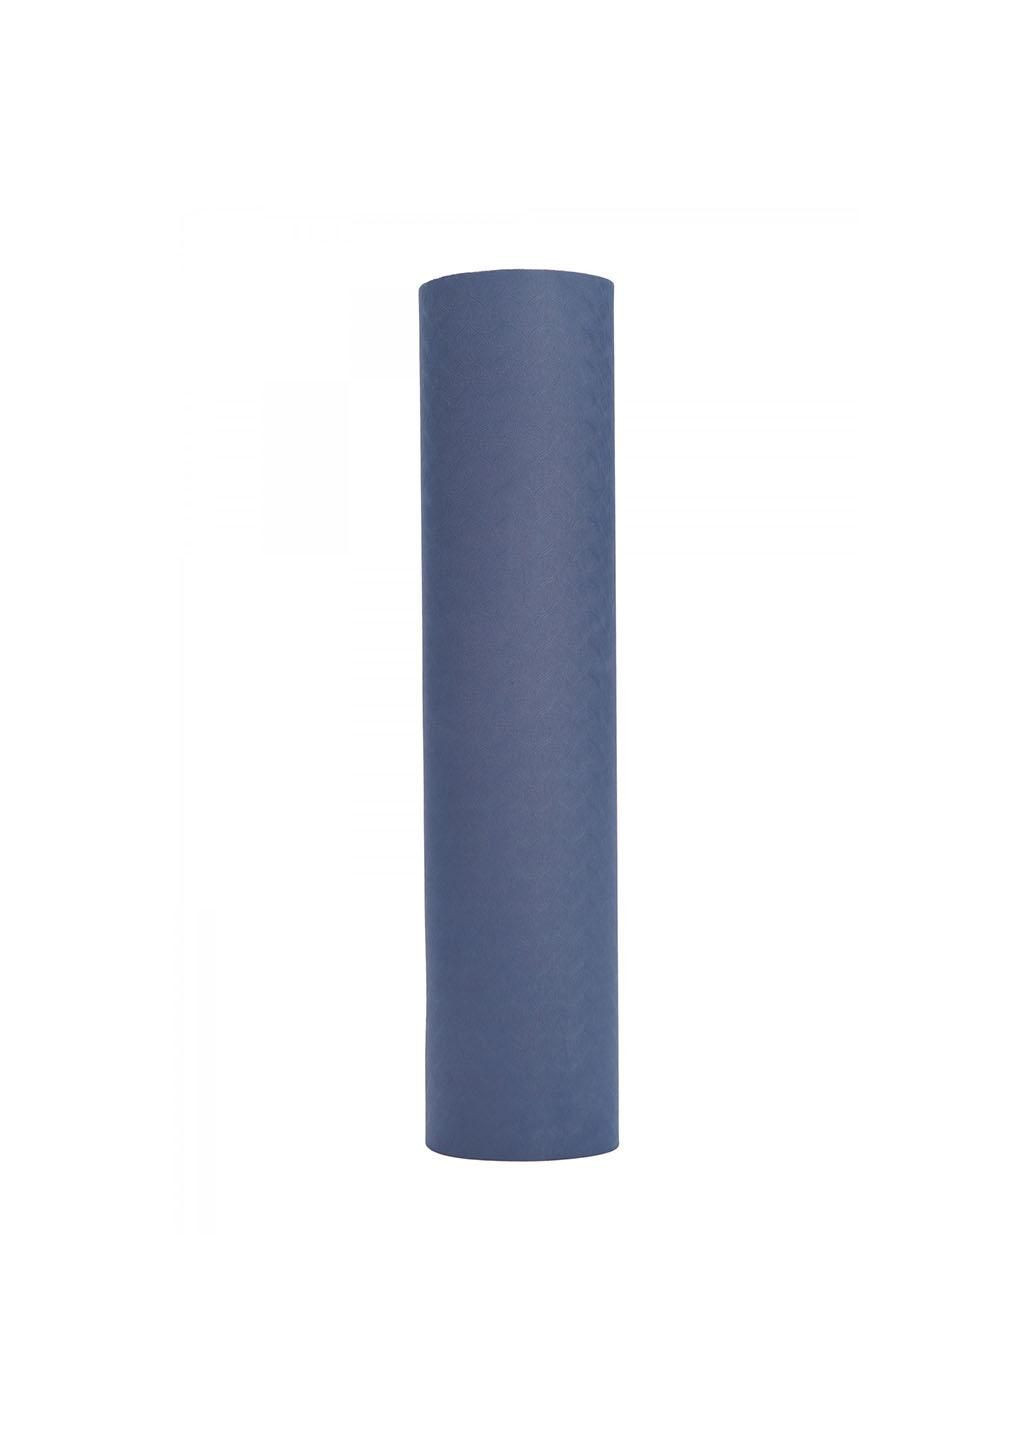 Коврик (мат) спортивный TPE 183 x 61 x 0.4 см для йоги и фитнеса SV-EZ0053 Blue/Sky Blue SportVida (278567866)